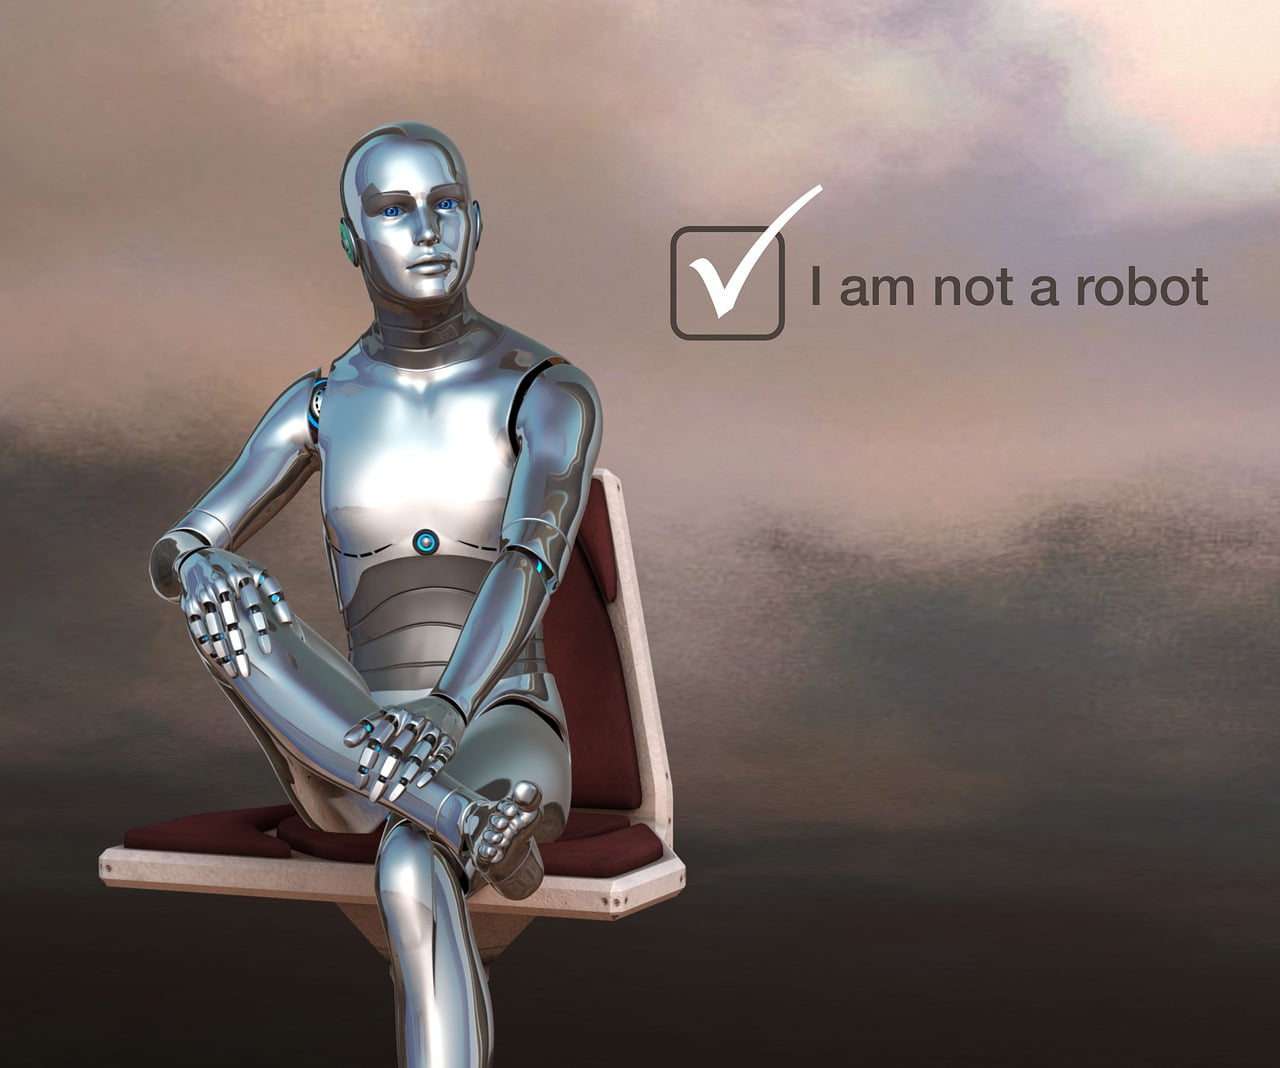 I hate captcha - I'm not a robot